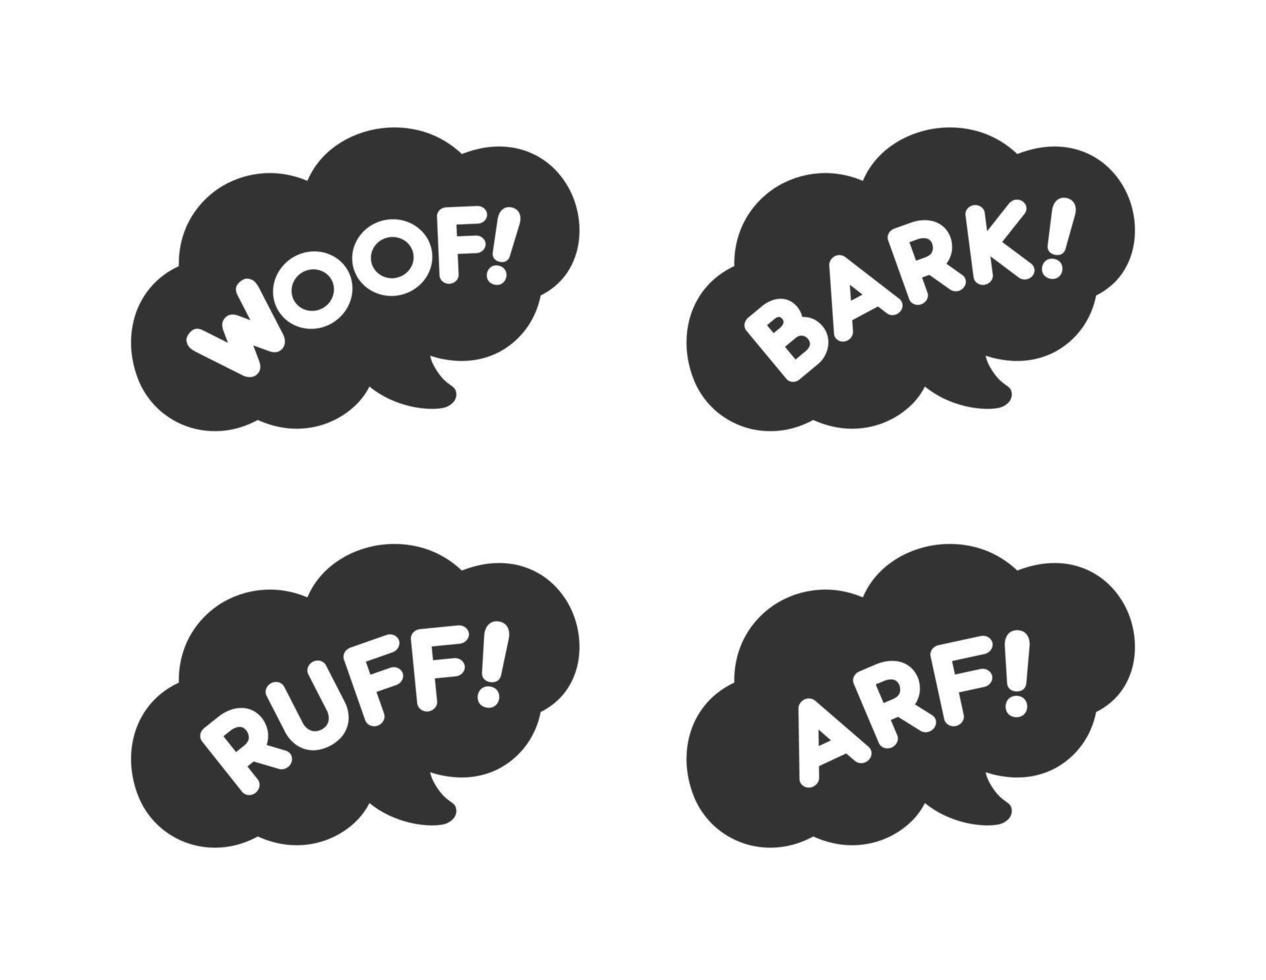 Cómics de dibujos animados, efecto de sonido de ladrido de perro y conjunto de letras. texto blanco en una imagen prediseñada de globo de burbuja de voz negra oscura. silueta de ilustración de vector plano simple sobre fondo blanco.